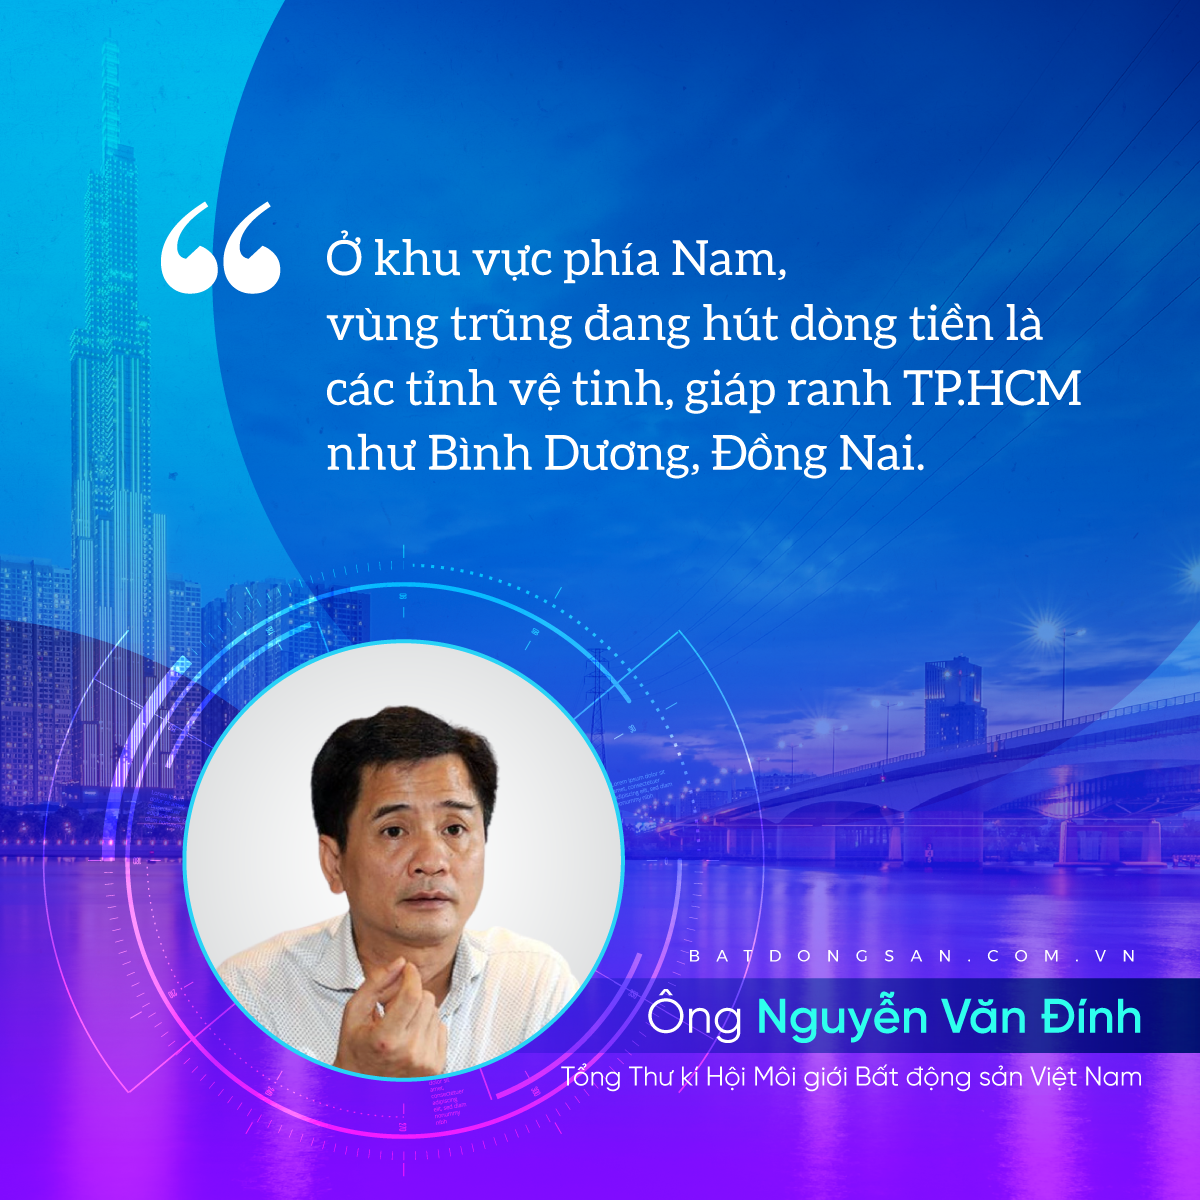 quote và hình ảnh ông Nguyễn Văn Đính